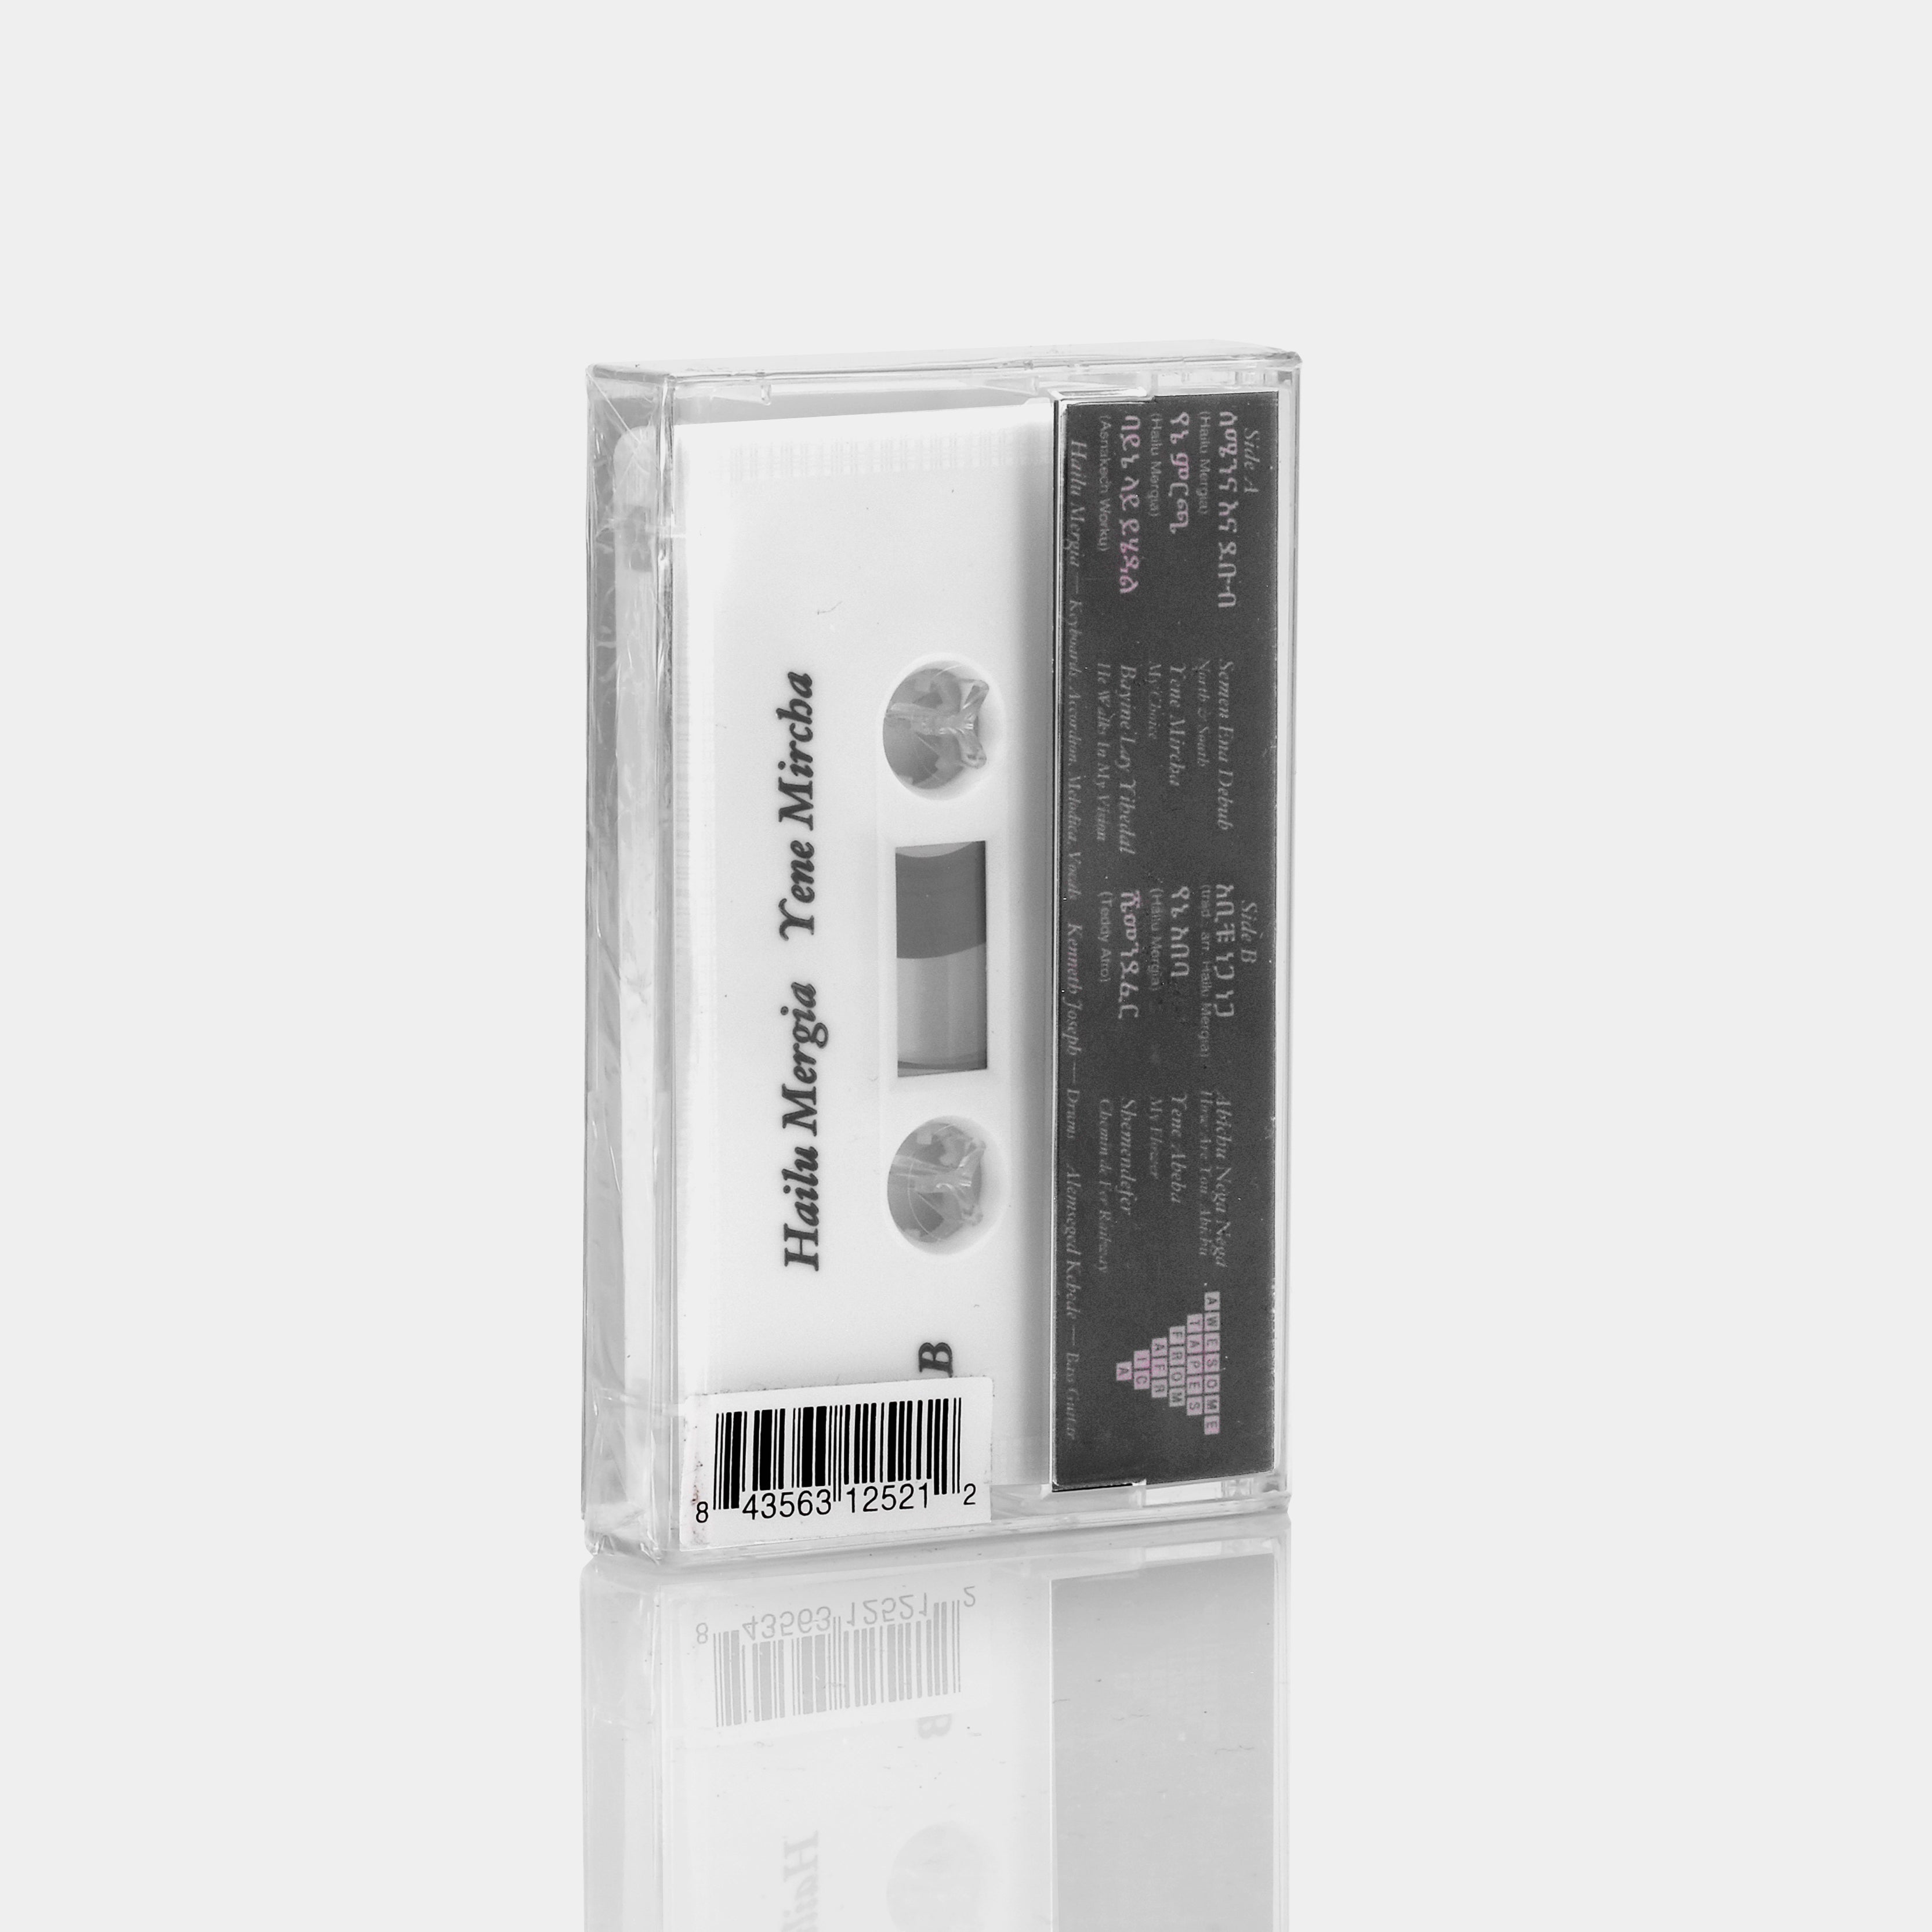 Hailu Mergia - Yene Mircha Cassette Tape